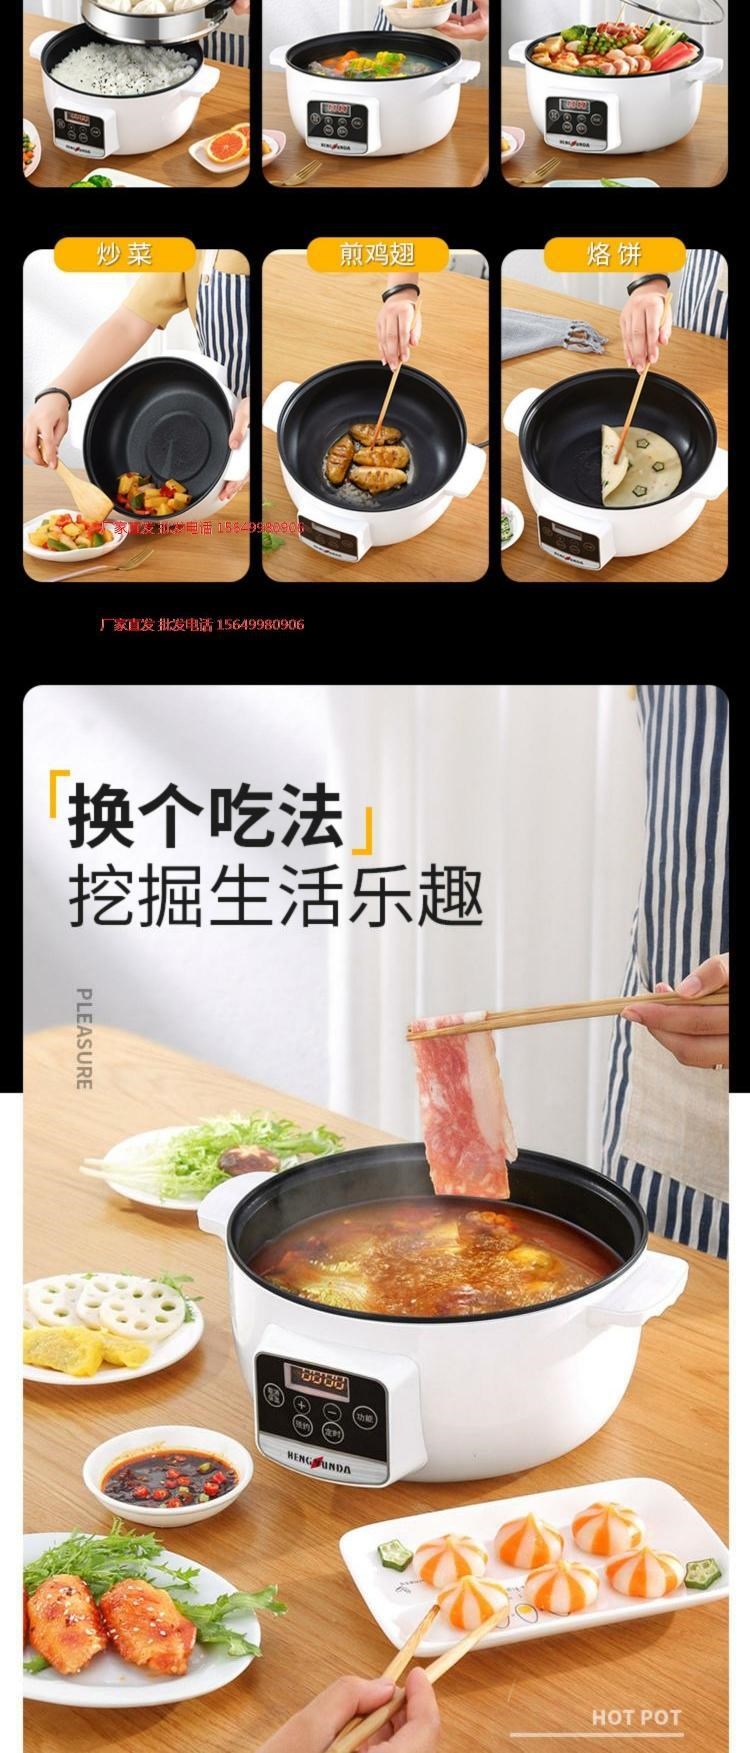 . Nồi lẩu nướng một nồi gia dụng Dụng cụ nhà bếp tròn Hàn Quốc nấu cơm nấu cơm bếp từ đơn nồi điện nhỏ đa chức năng - Phòng bếp